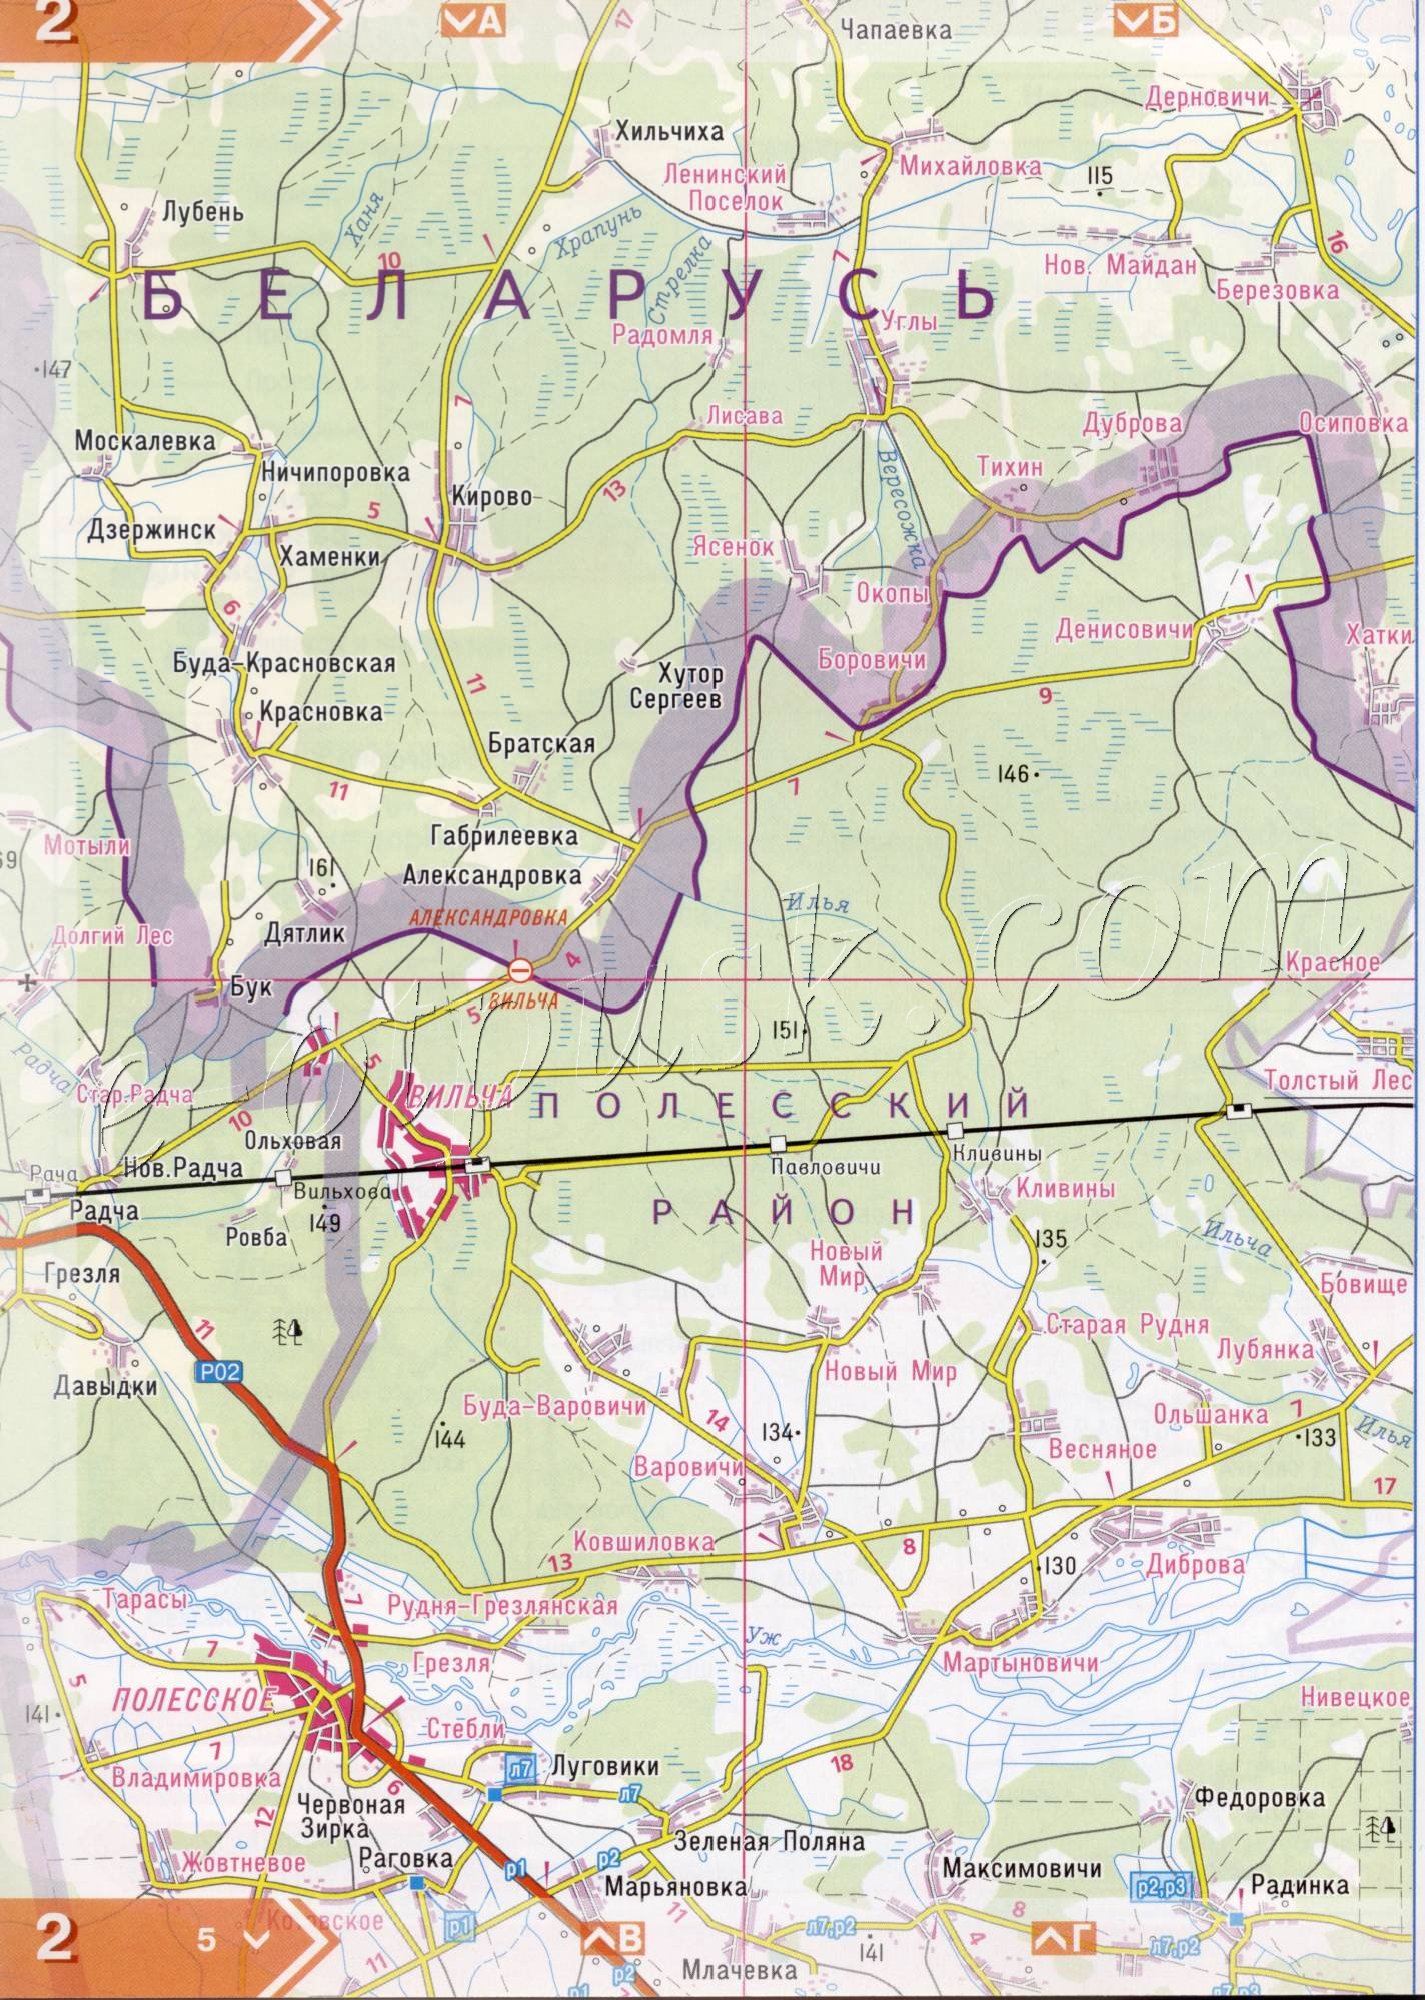 Atlas von der Region Kiew. Eine detaillierte Karte der Region Kiew von dem Atlas von Autobahnen. Kiewer Gebiet auf einer detaillierten Karte Maßstab 1cm = 3km. Freie Chapaevka, Han, Schnarcher